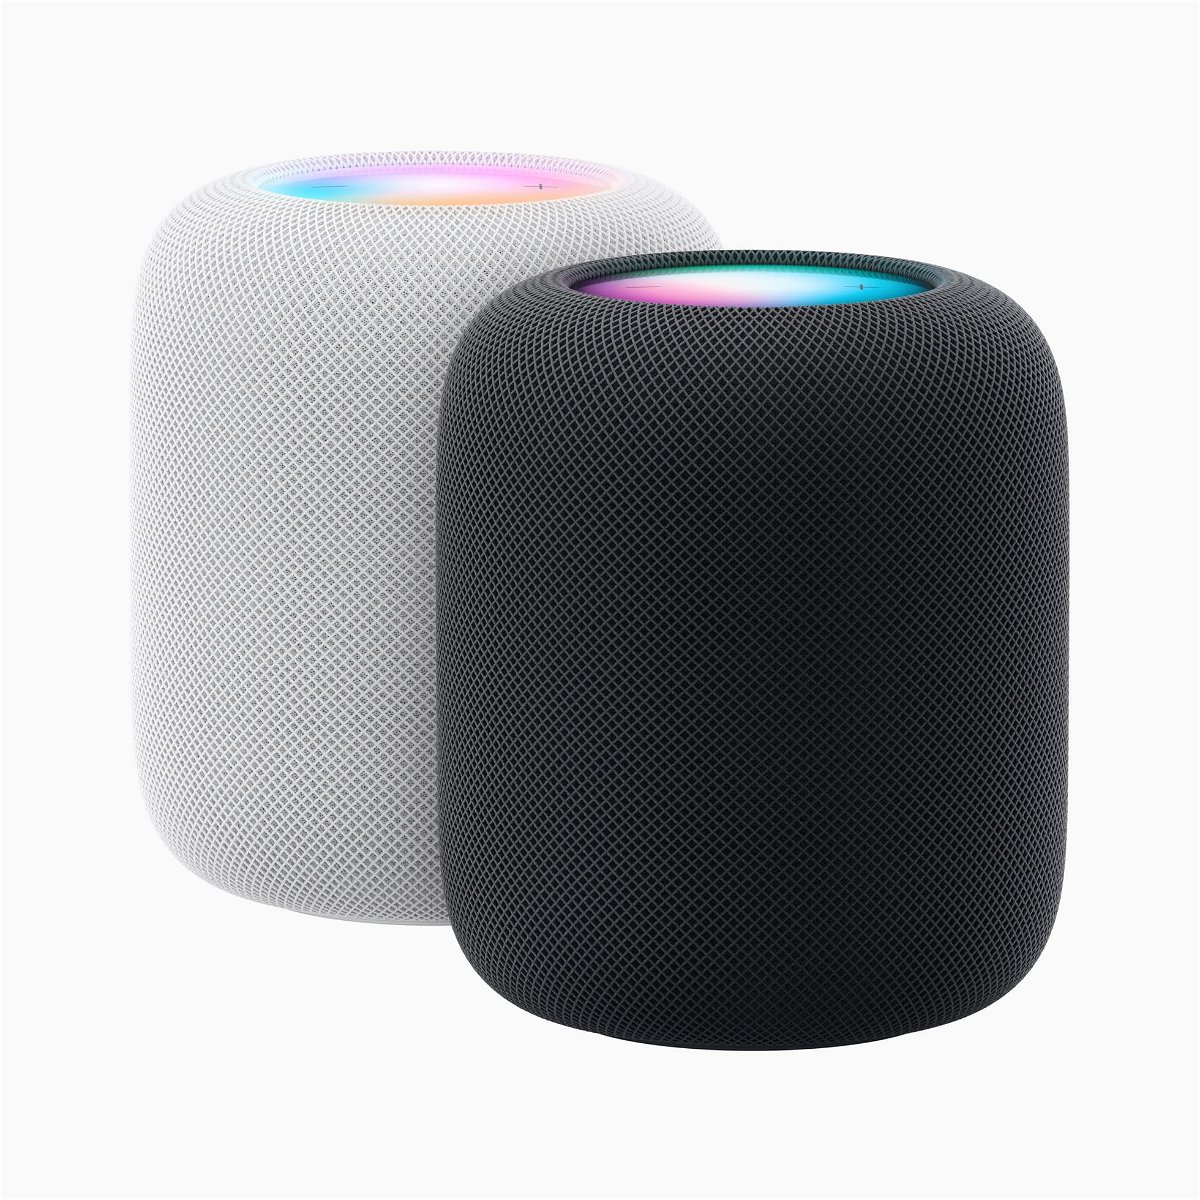 Apple stellt neuen HomePod vor: Besser Sound und mehr Intelligenz